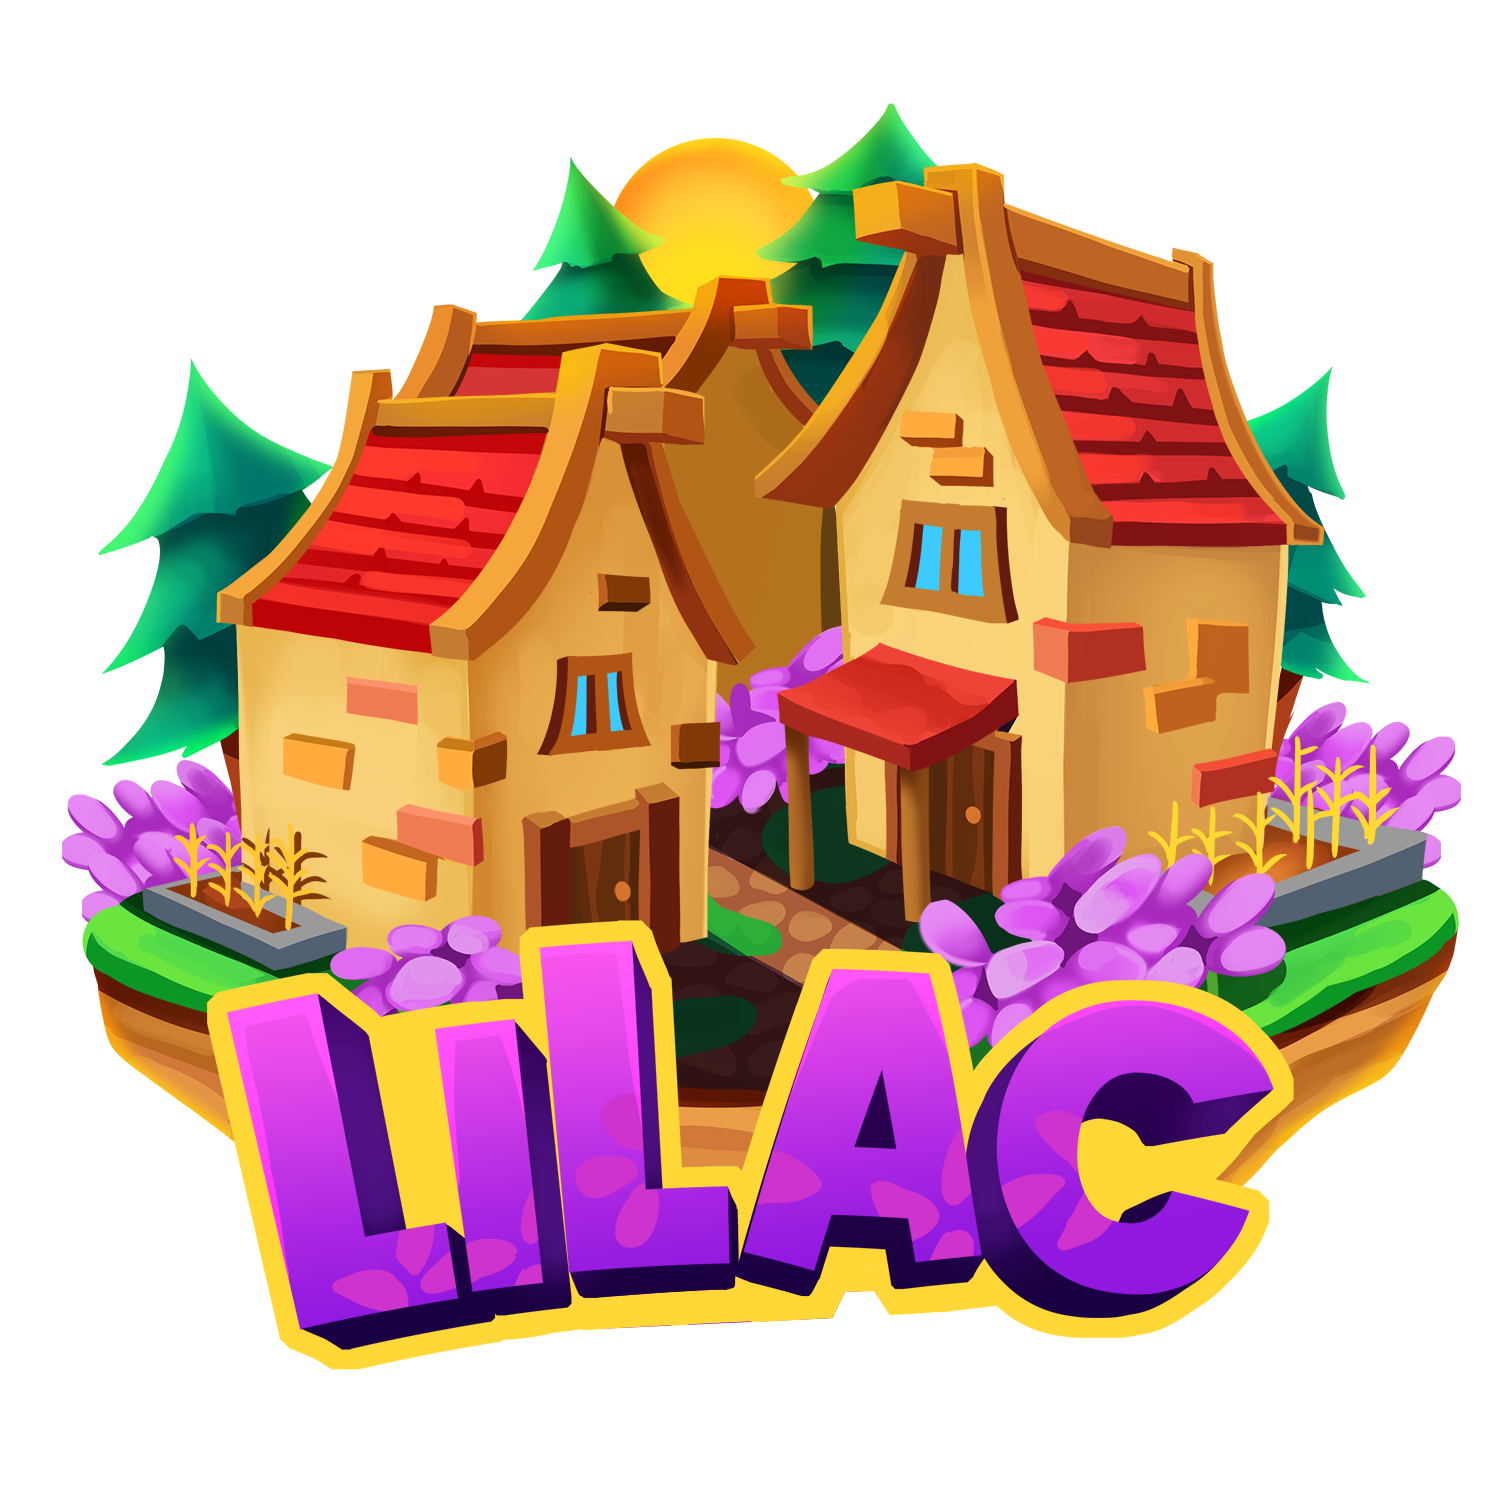 LilacMC | Unique & Friendly Minecraft Server